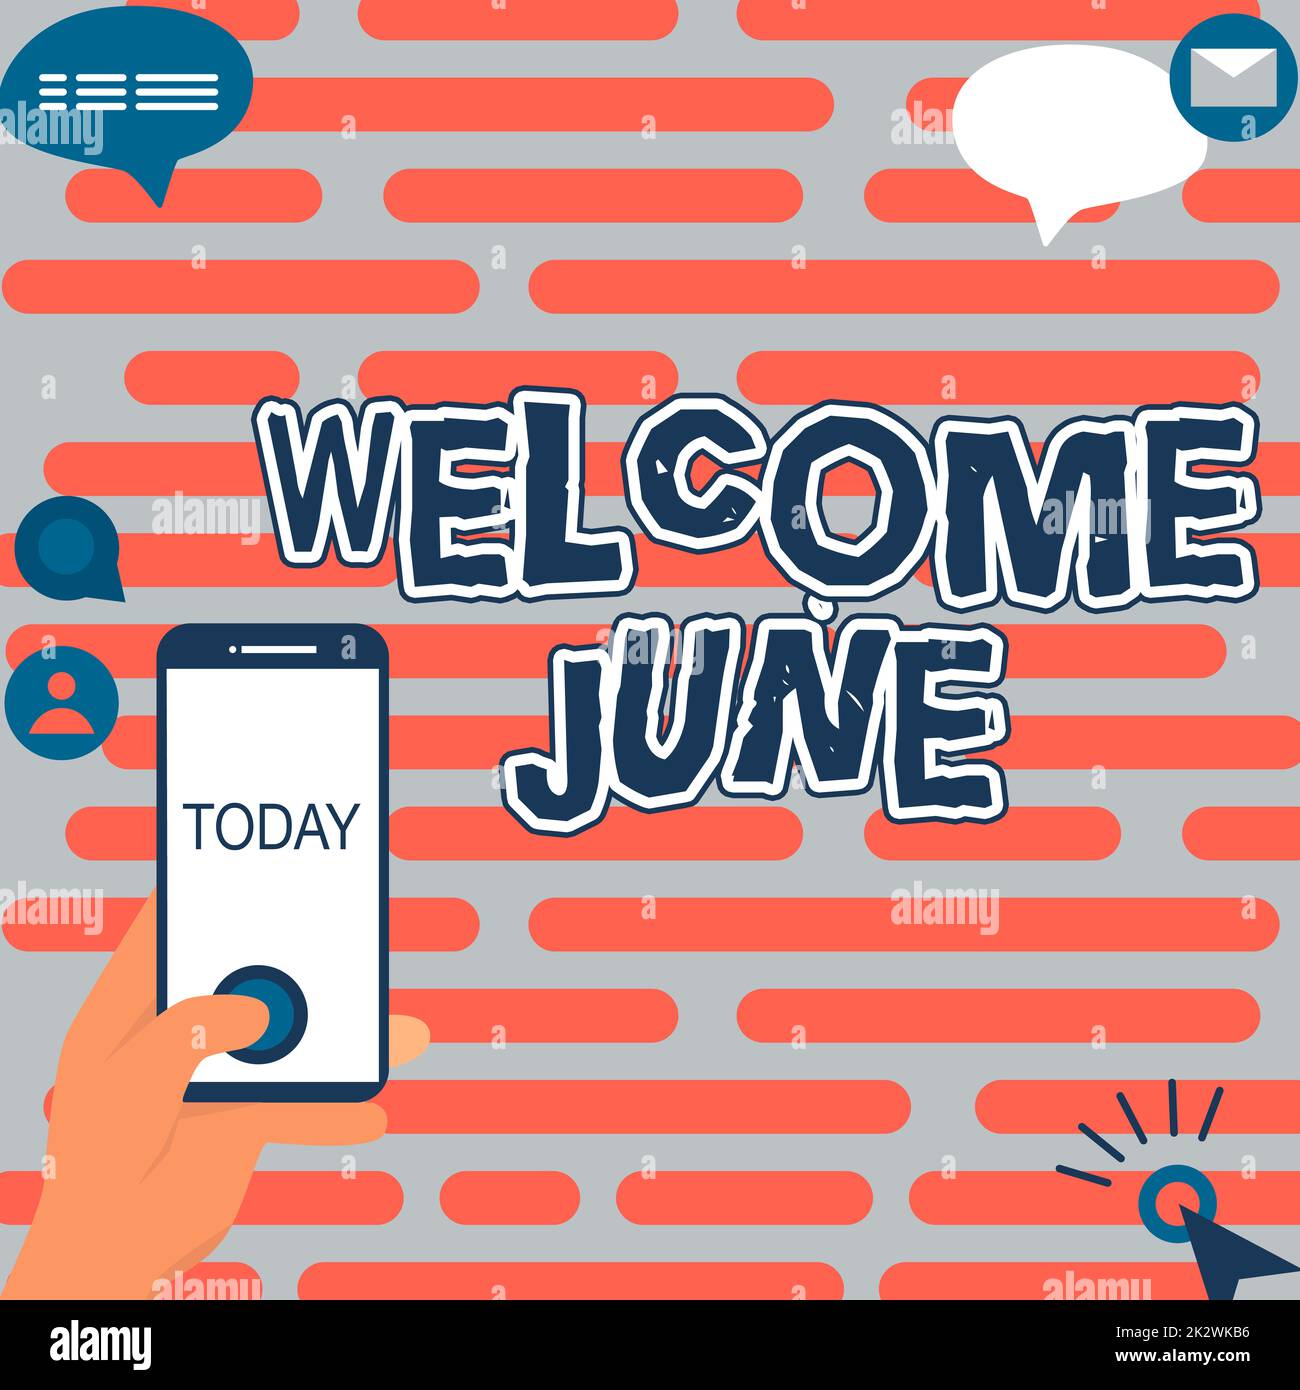 Textzeichen mit „Welcome June“ (Willkommen Juni). Business Showcase Kalender Sechster Monat zweites Quartal dreißig Tage Grüße Hände halten technologisches Gerät durch Drücken der Anwendungstaste. Stockfoto